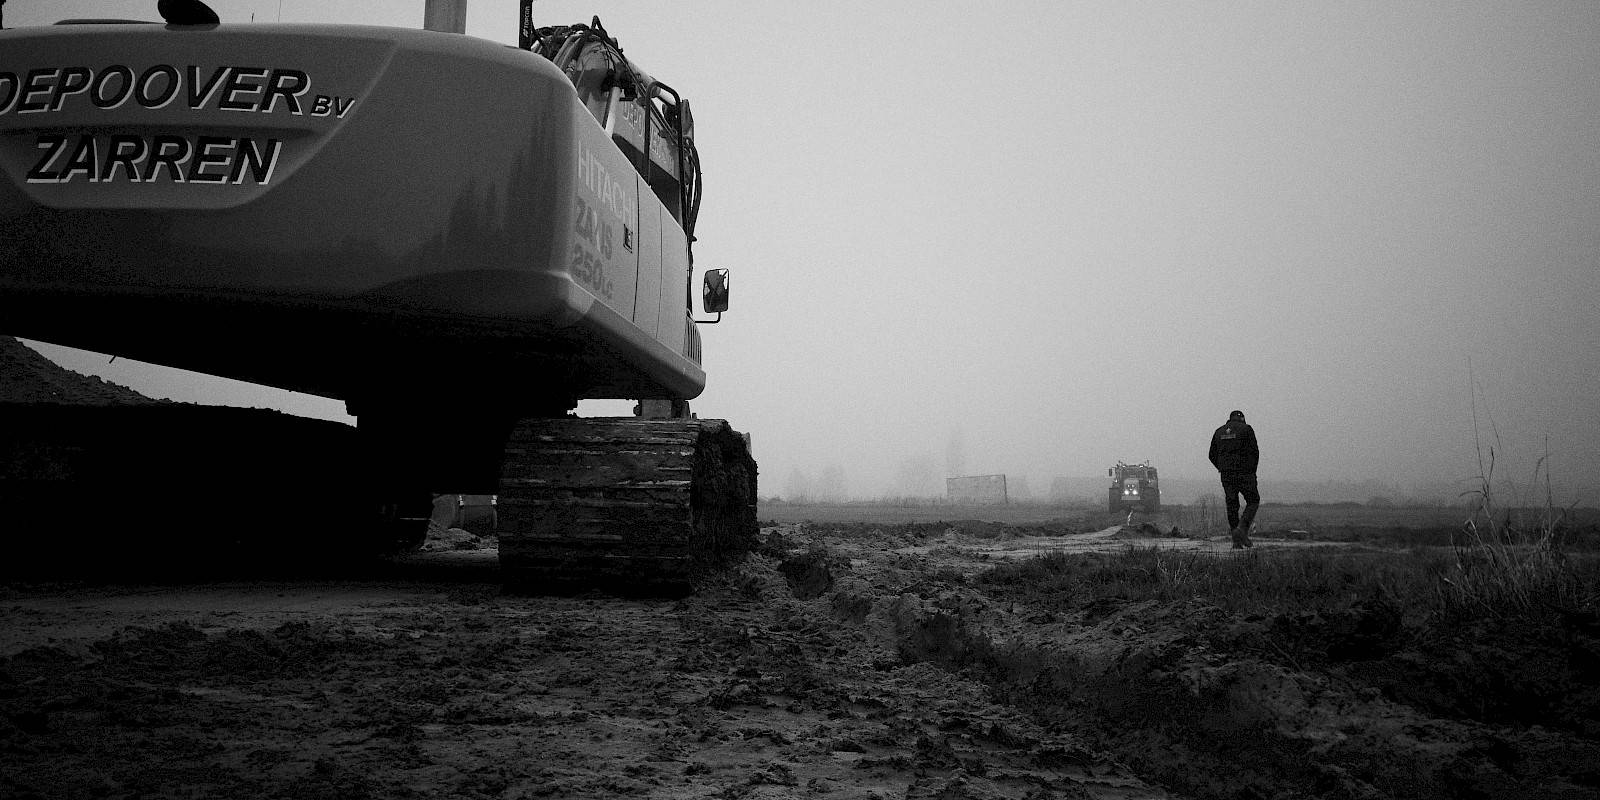 zwart-wit foto van kraan op veld, met werkman en tractor in achtergrond